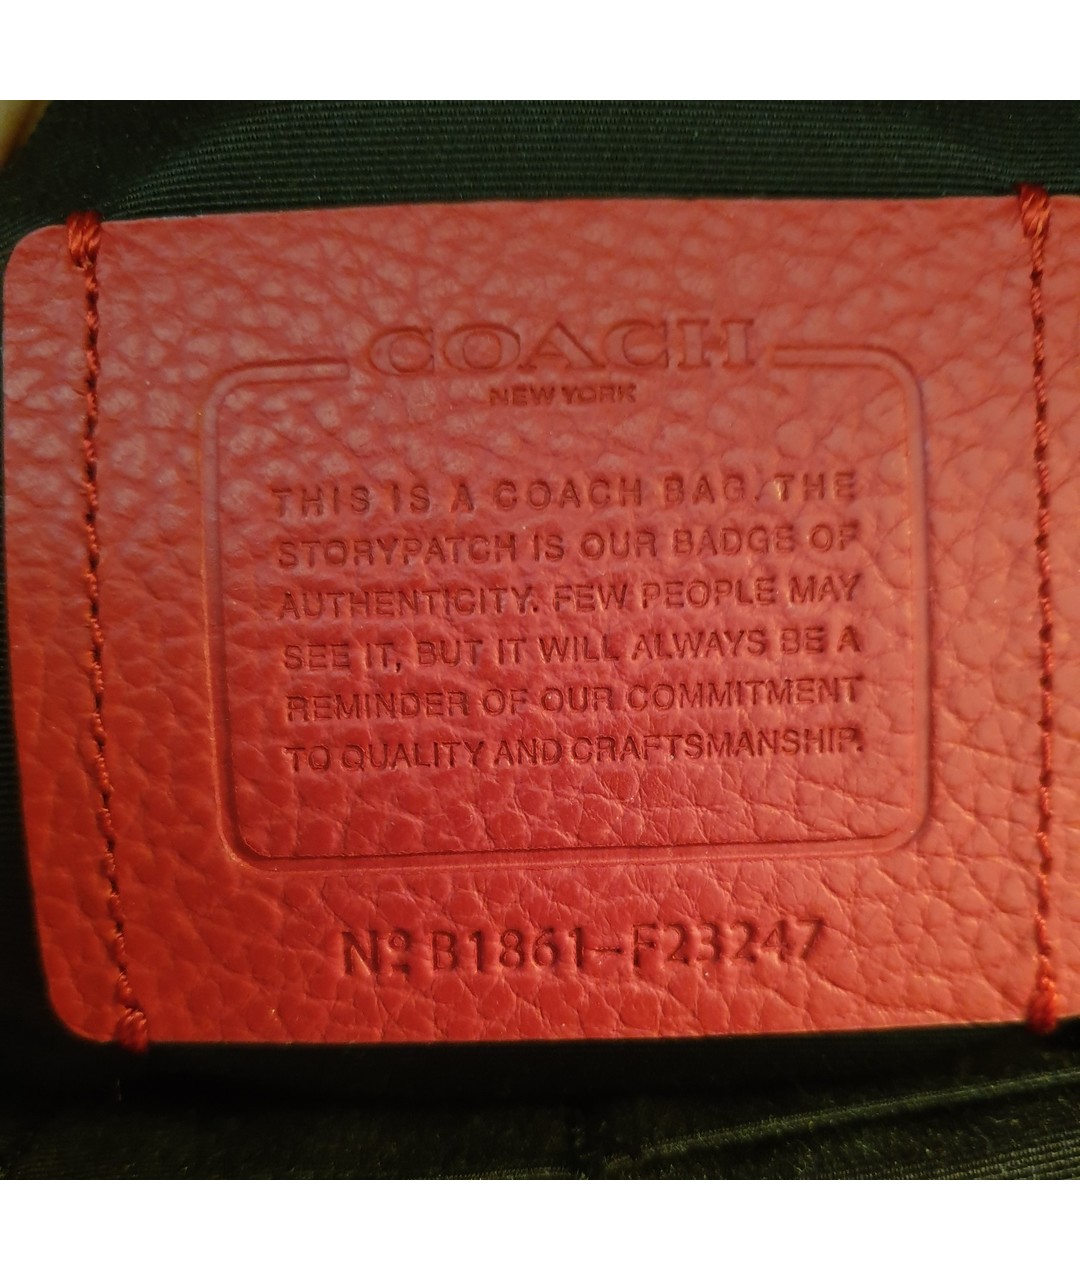 COACH Красный кожаный рюкзак, фото 5